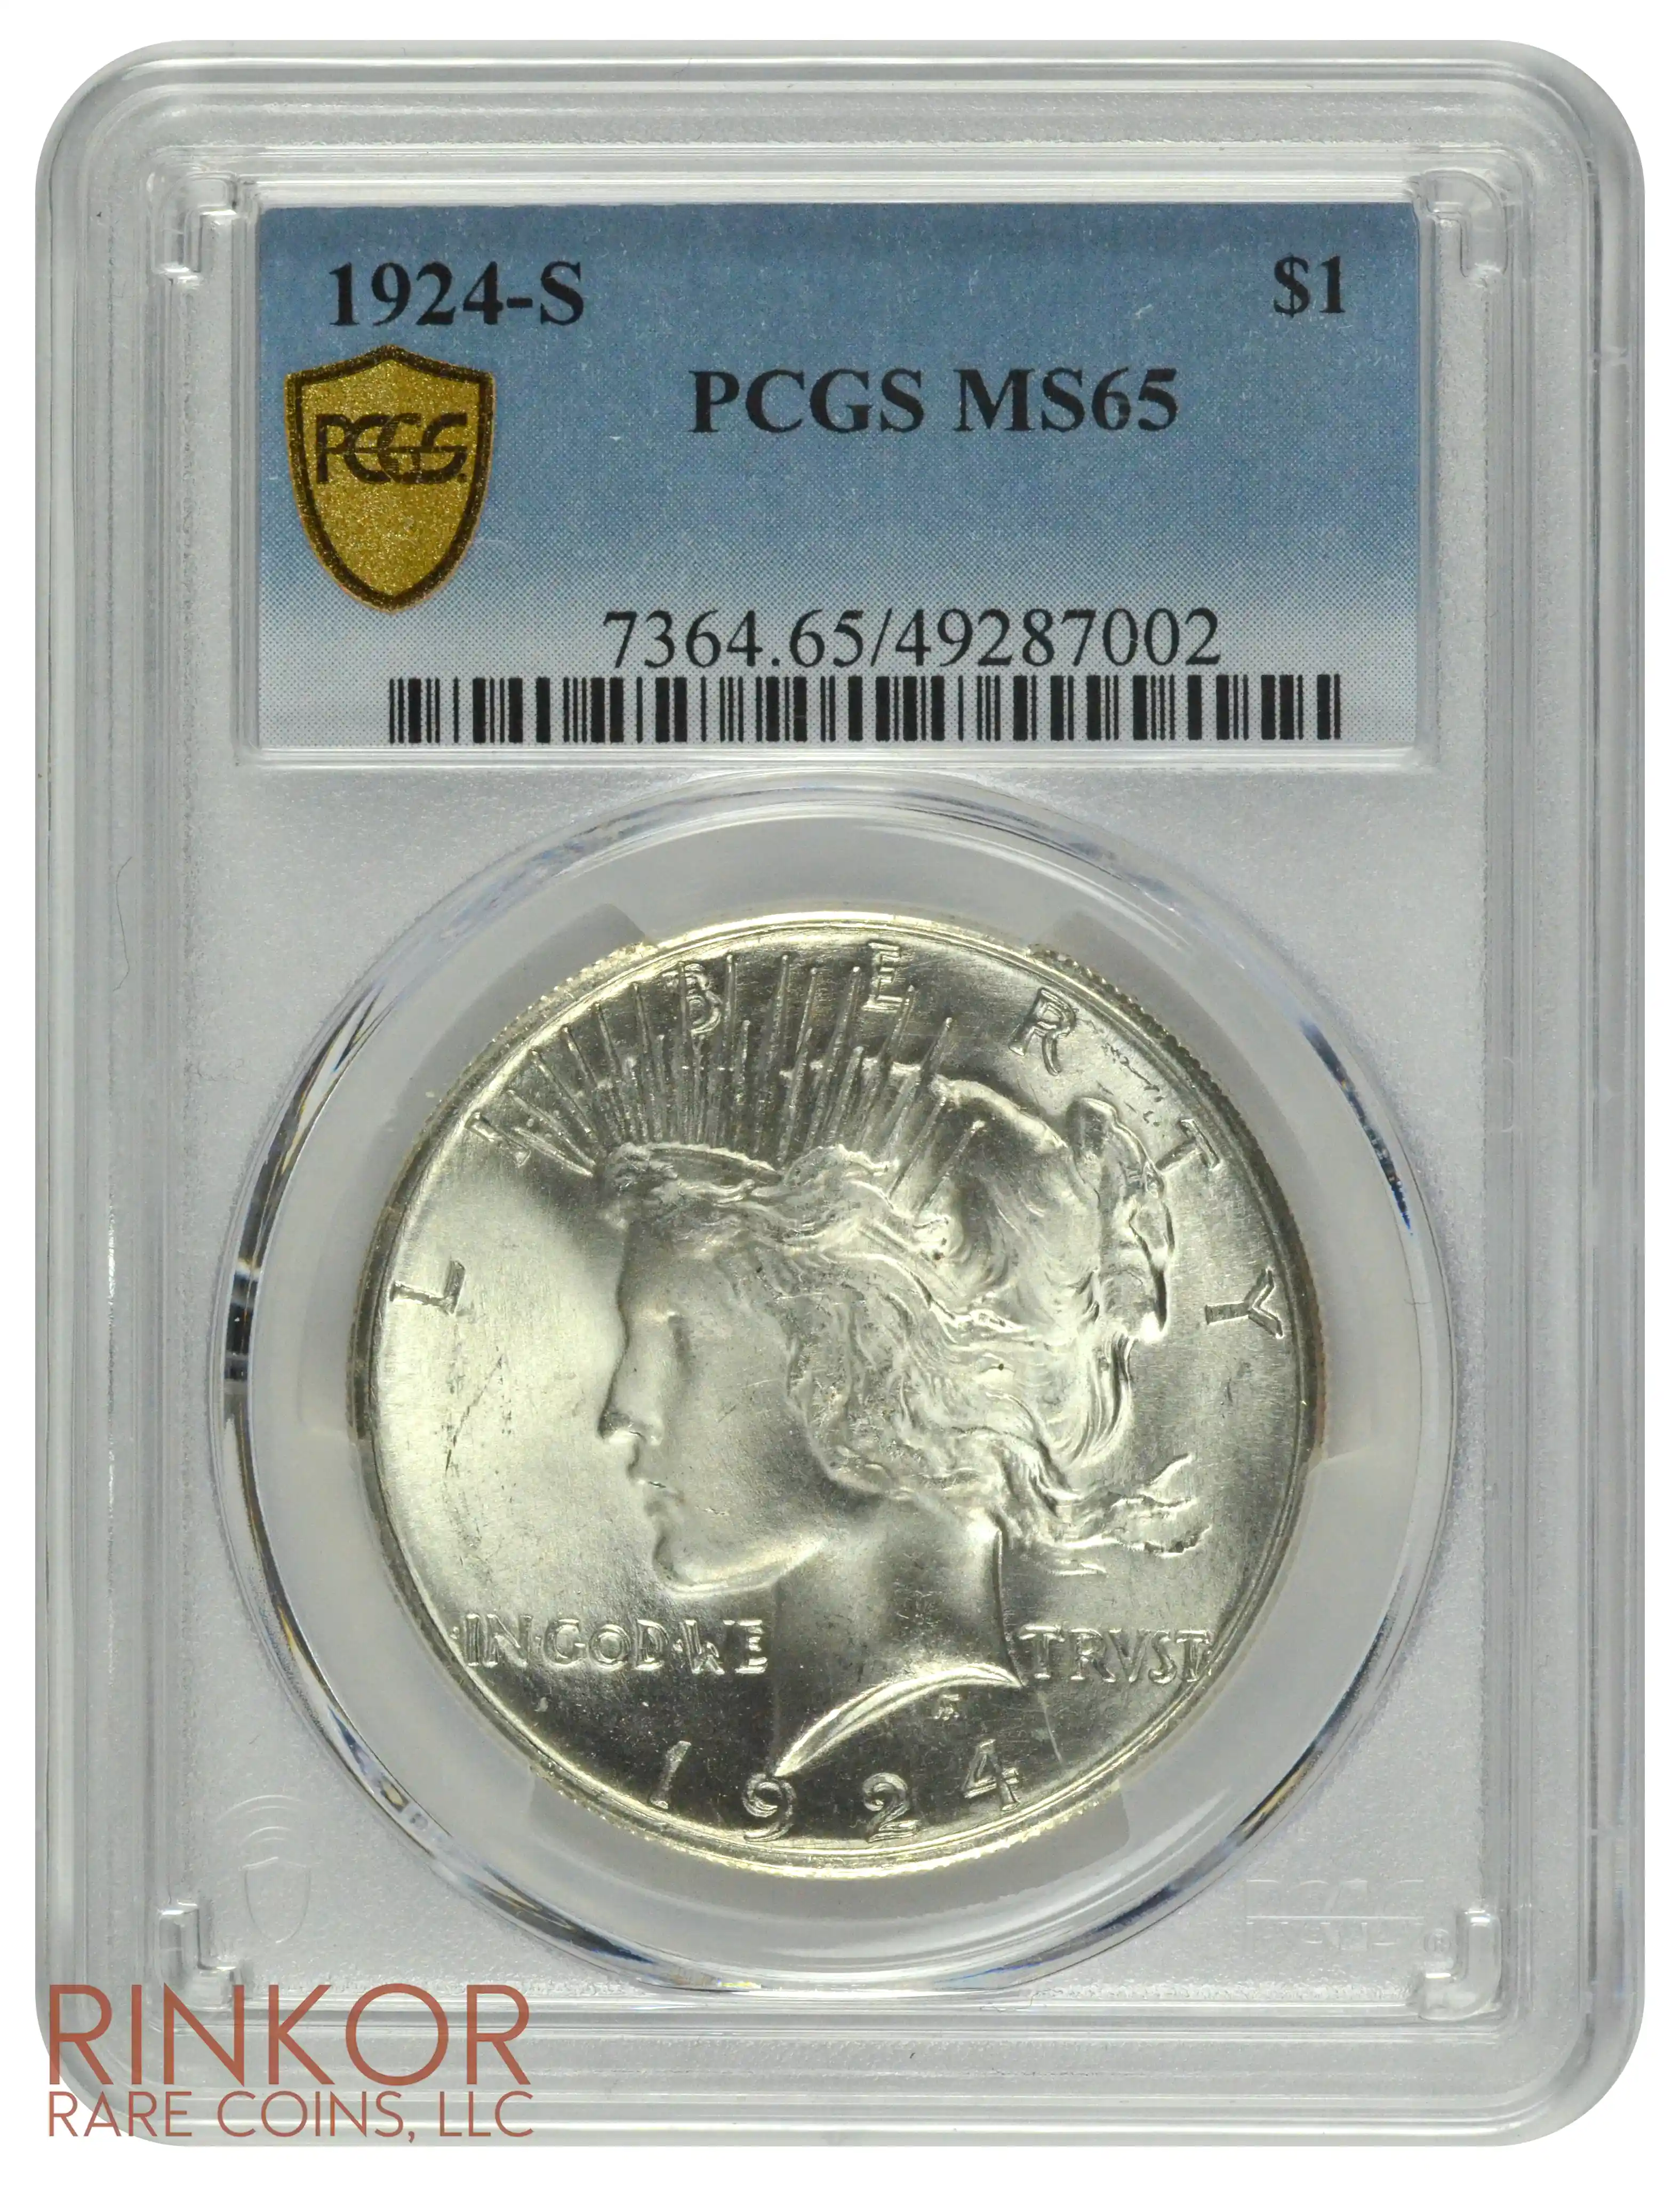 1924-S $1 PCGS MS 65